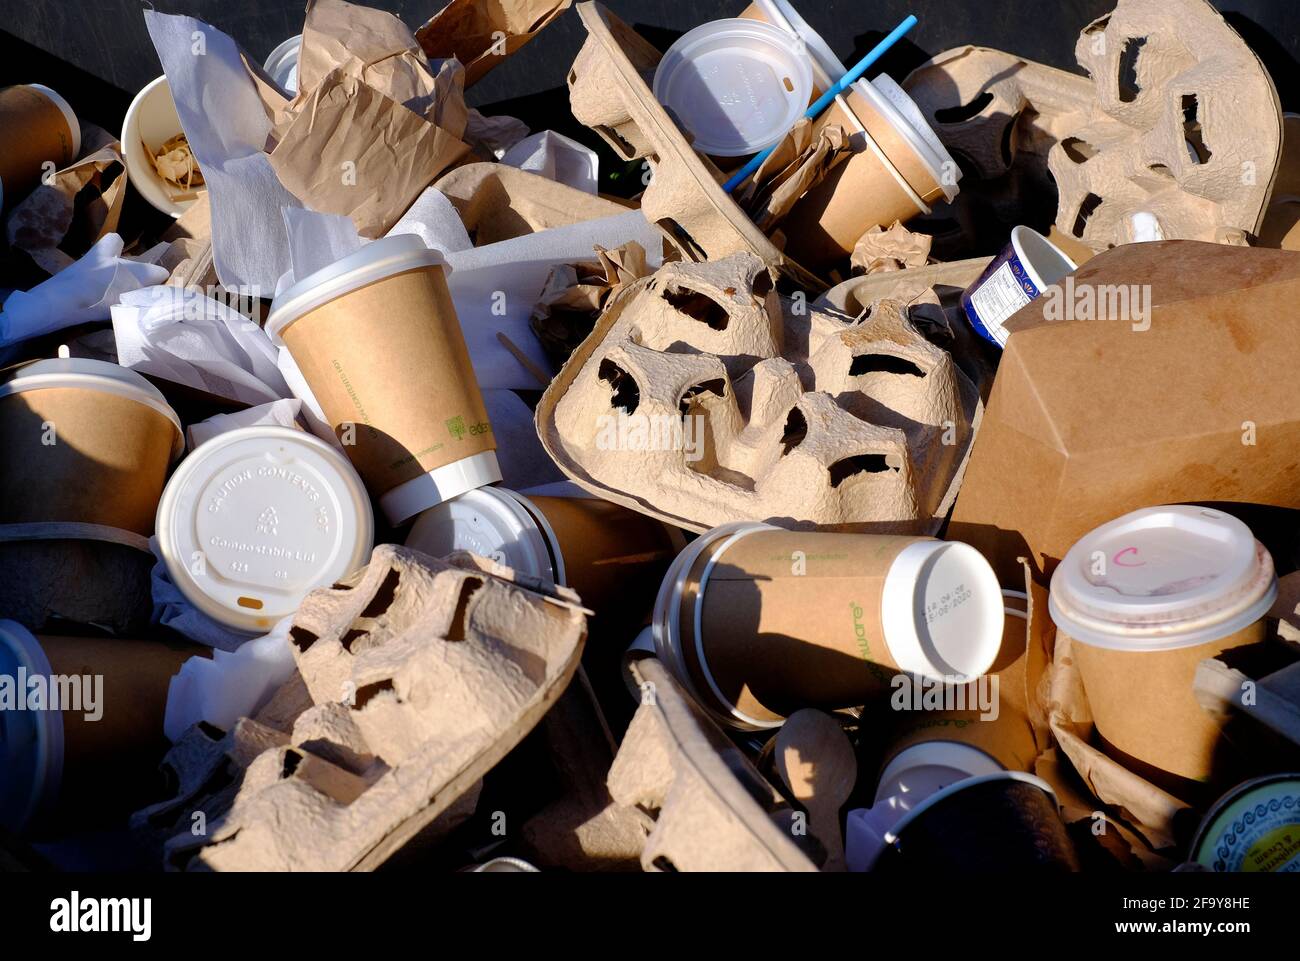 gobelets et supports en papier dans un bac de recyclage, norfolk, angleterre Banque D'Images